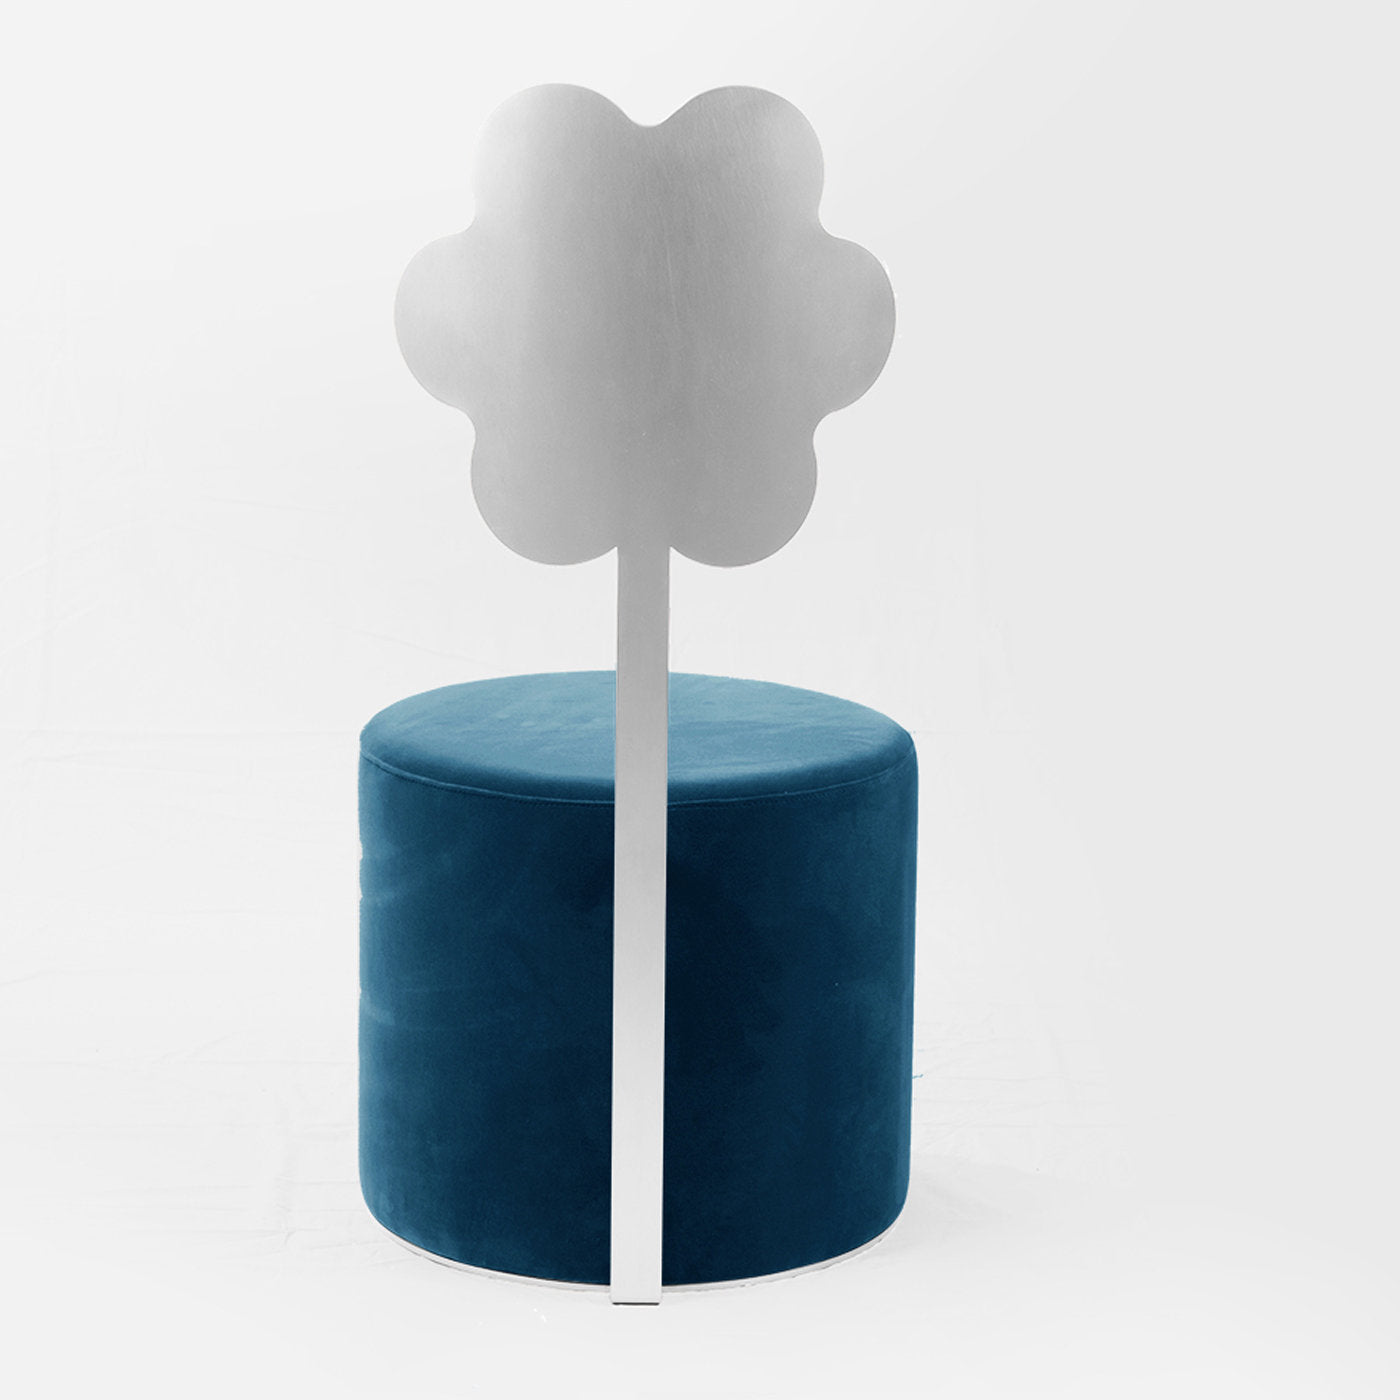 Daisy Blue Pouf by Artefatto Design Studio - Alternative view 2